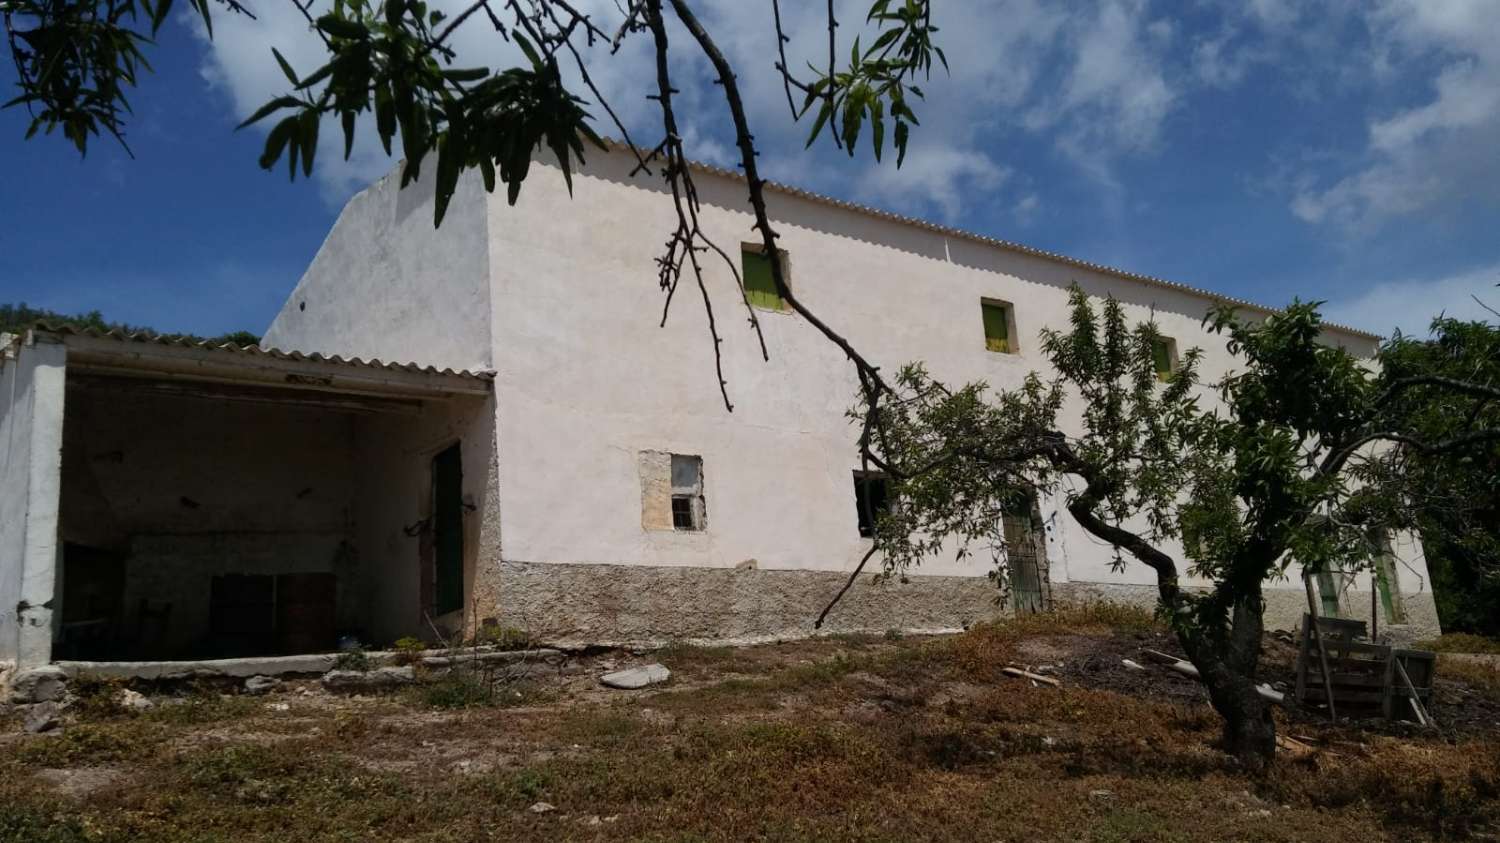 Отремонтированный фермерский дом со складом и видами в Торвизконе, Гранада